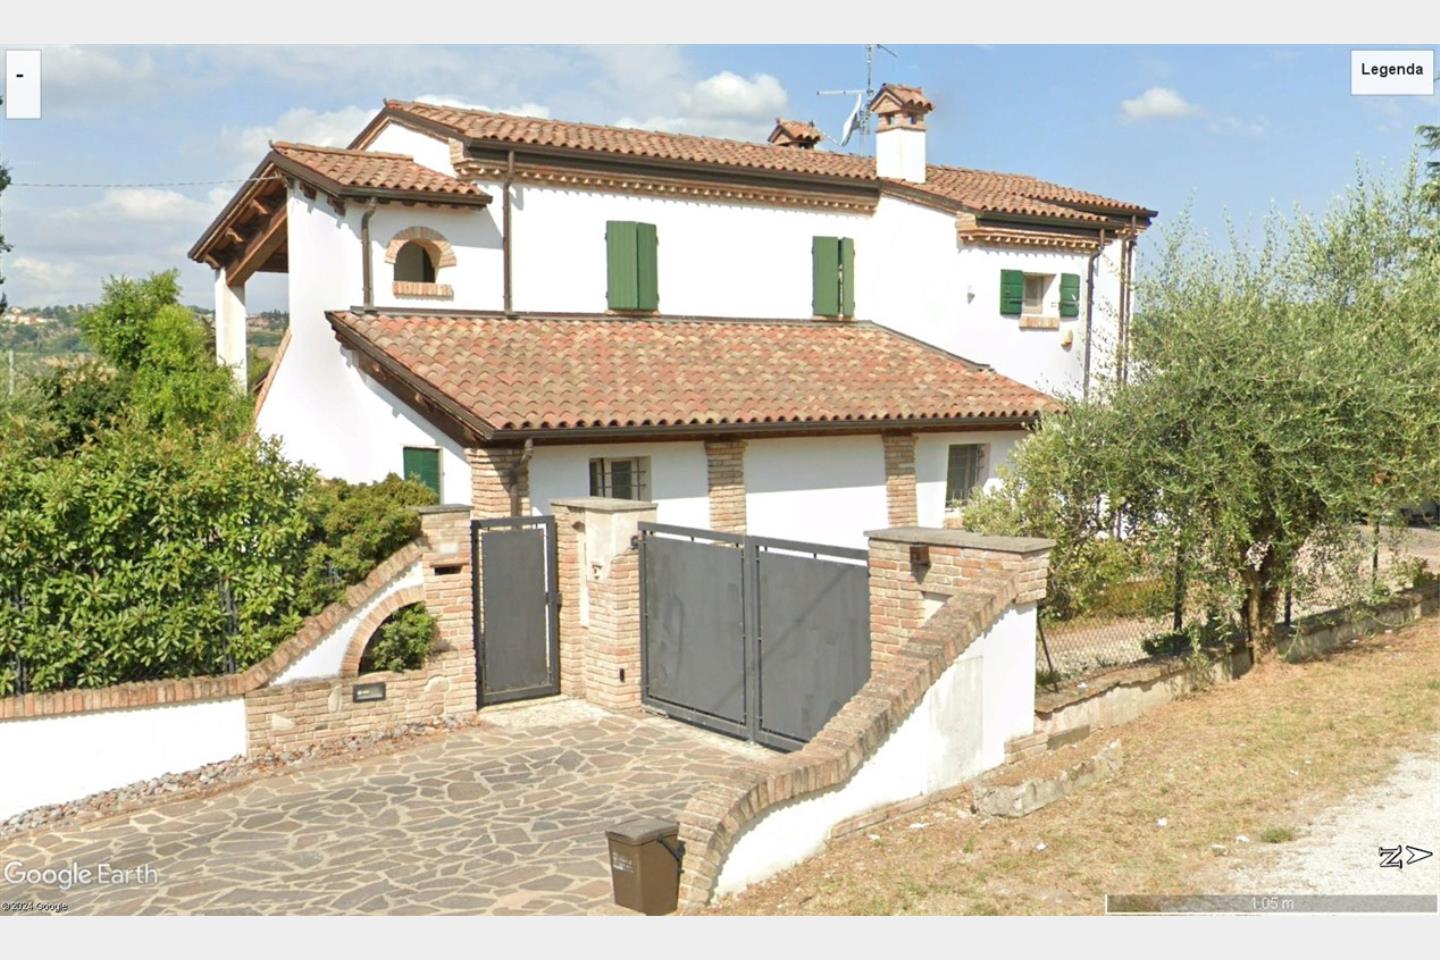 Villa in Vendita Longiano